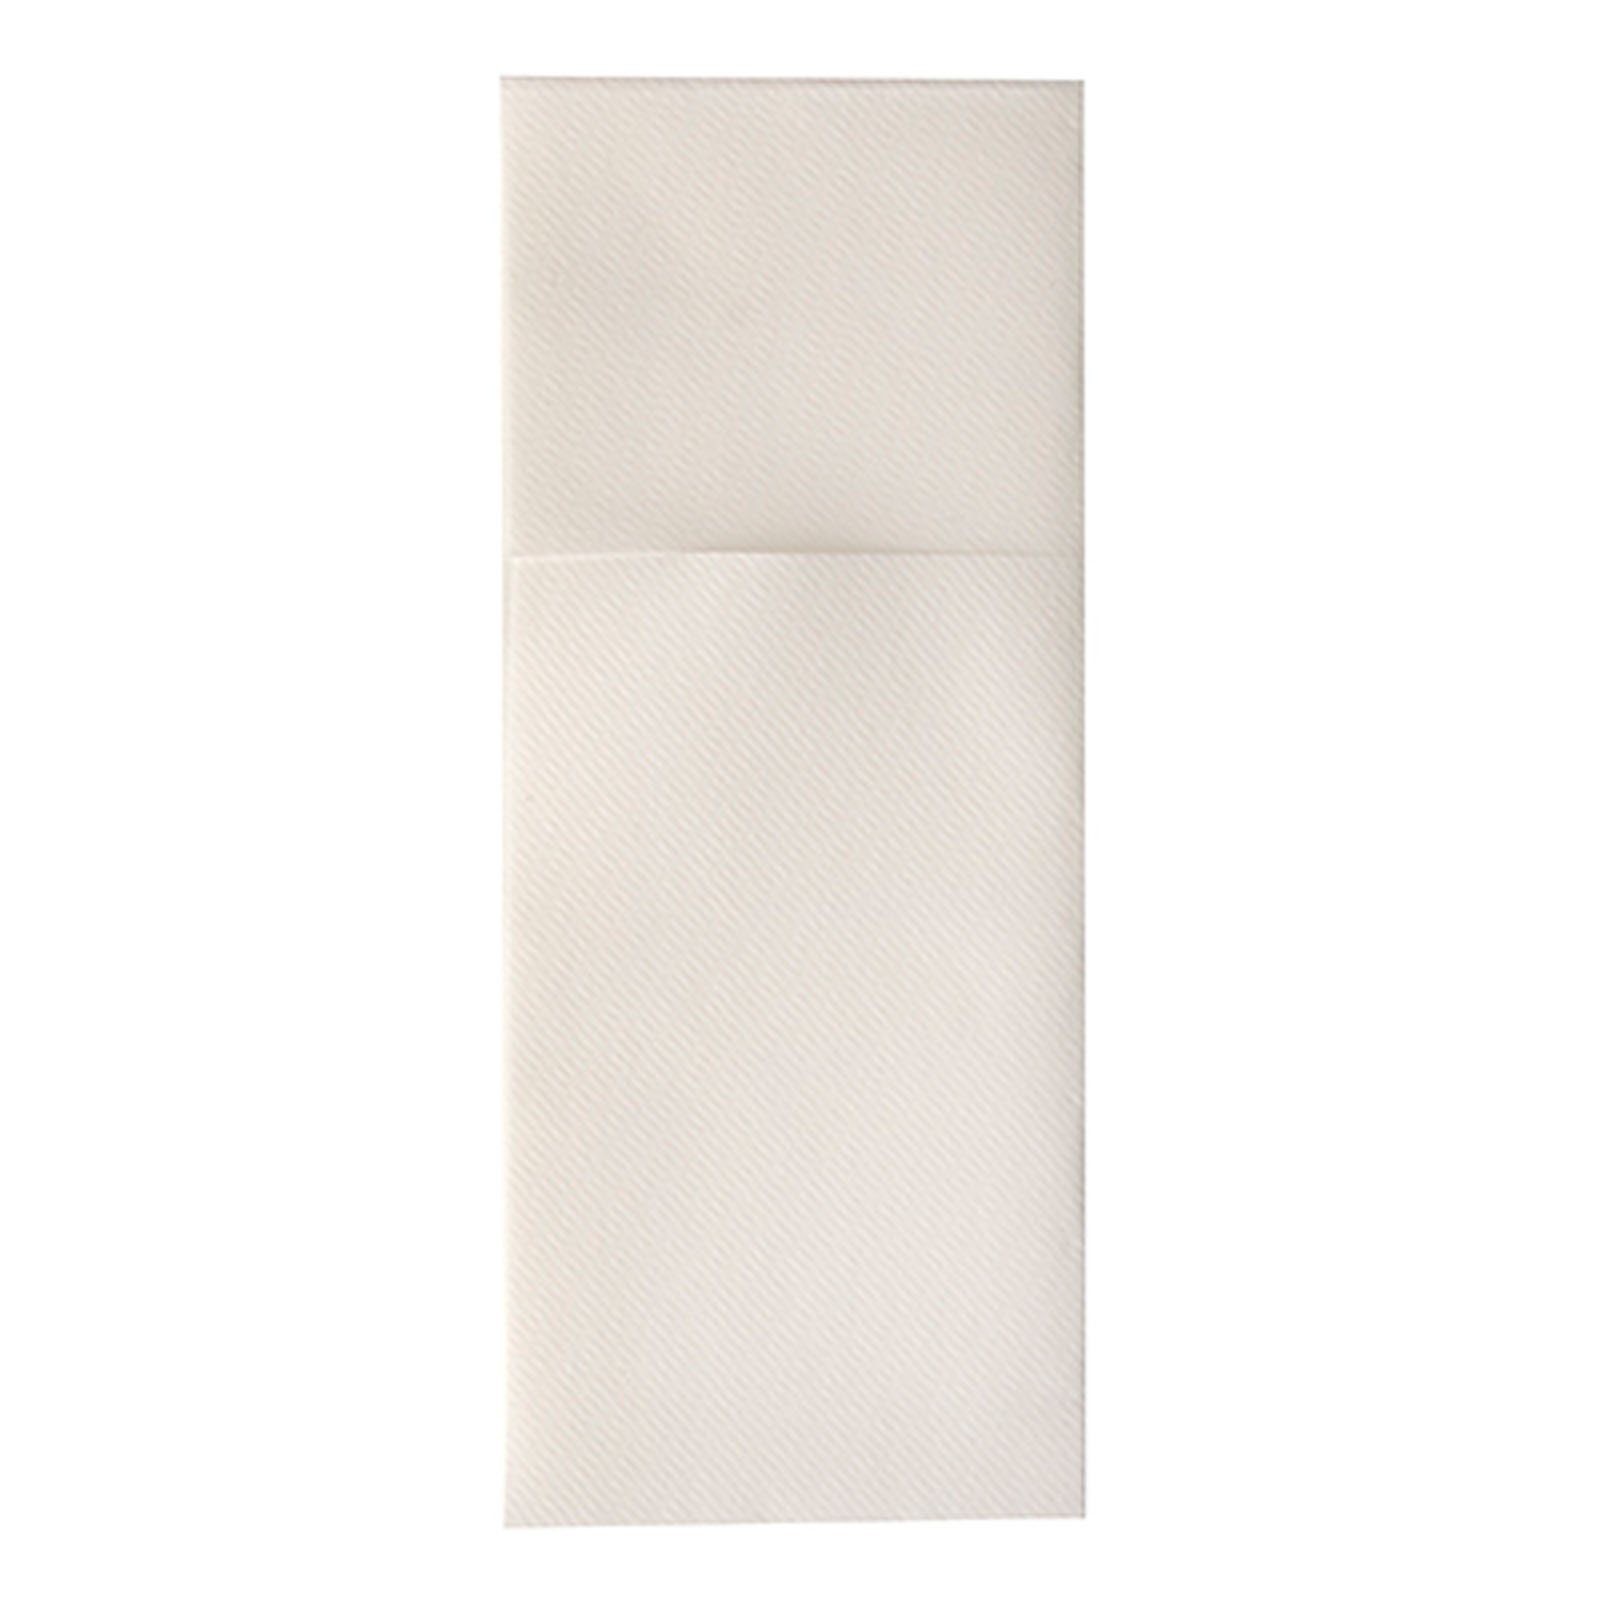 Starpak Einwegbesteck-Set 400 Stück Airlaid Bestecktaschen, 48 x 40 cm, 1/8-Falz, weiß